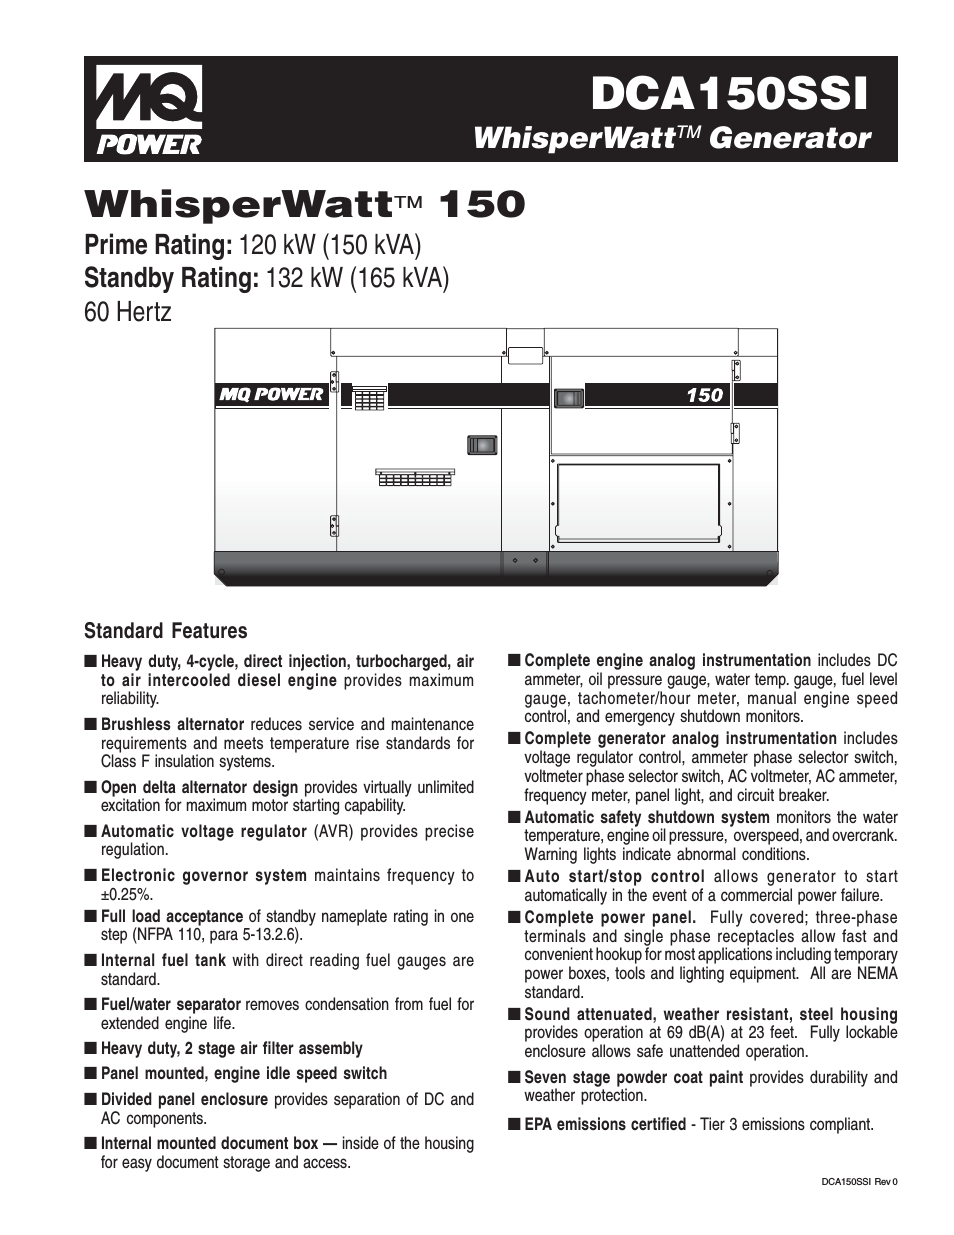 MQ Power WhisperWatt 150 Generator DCA150SSI